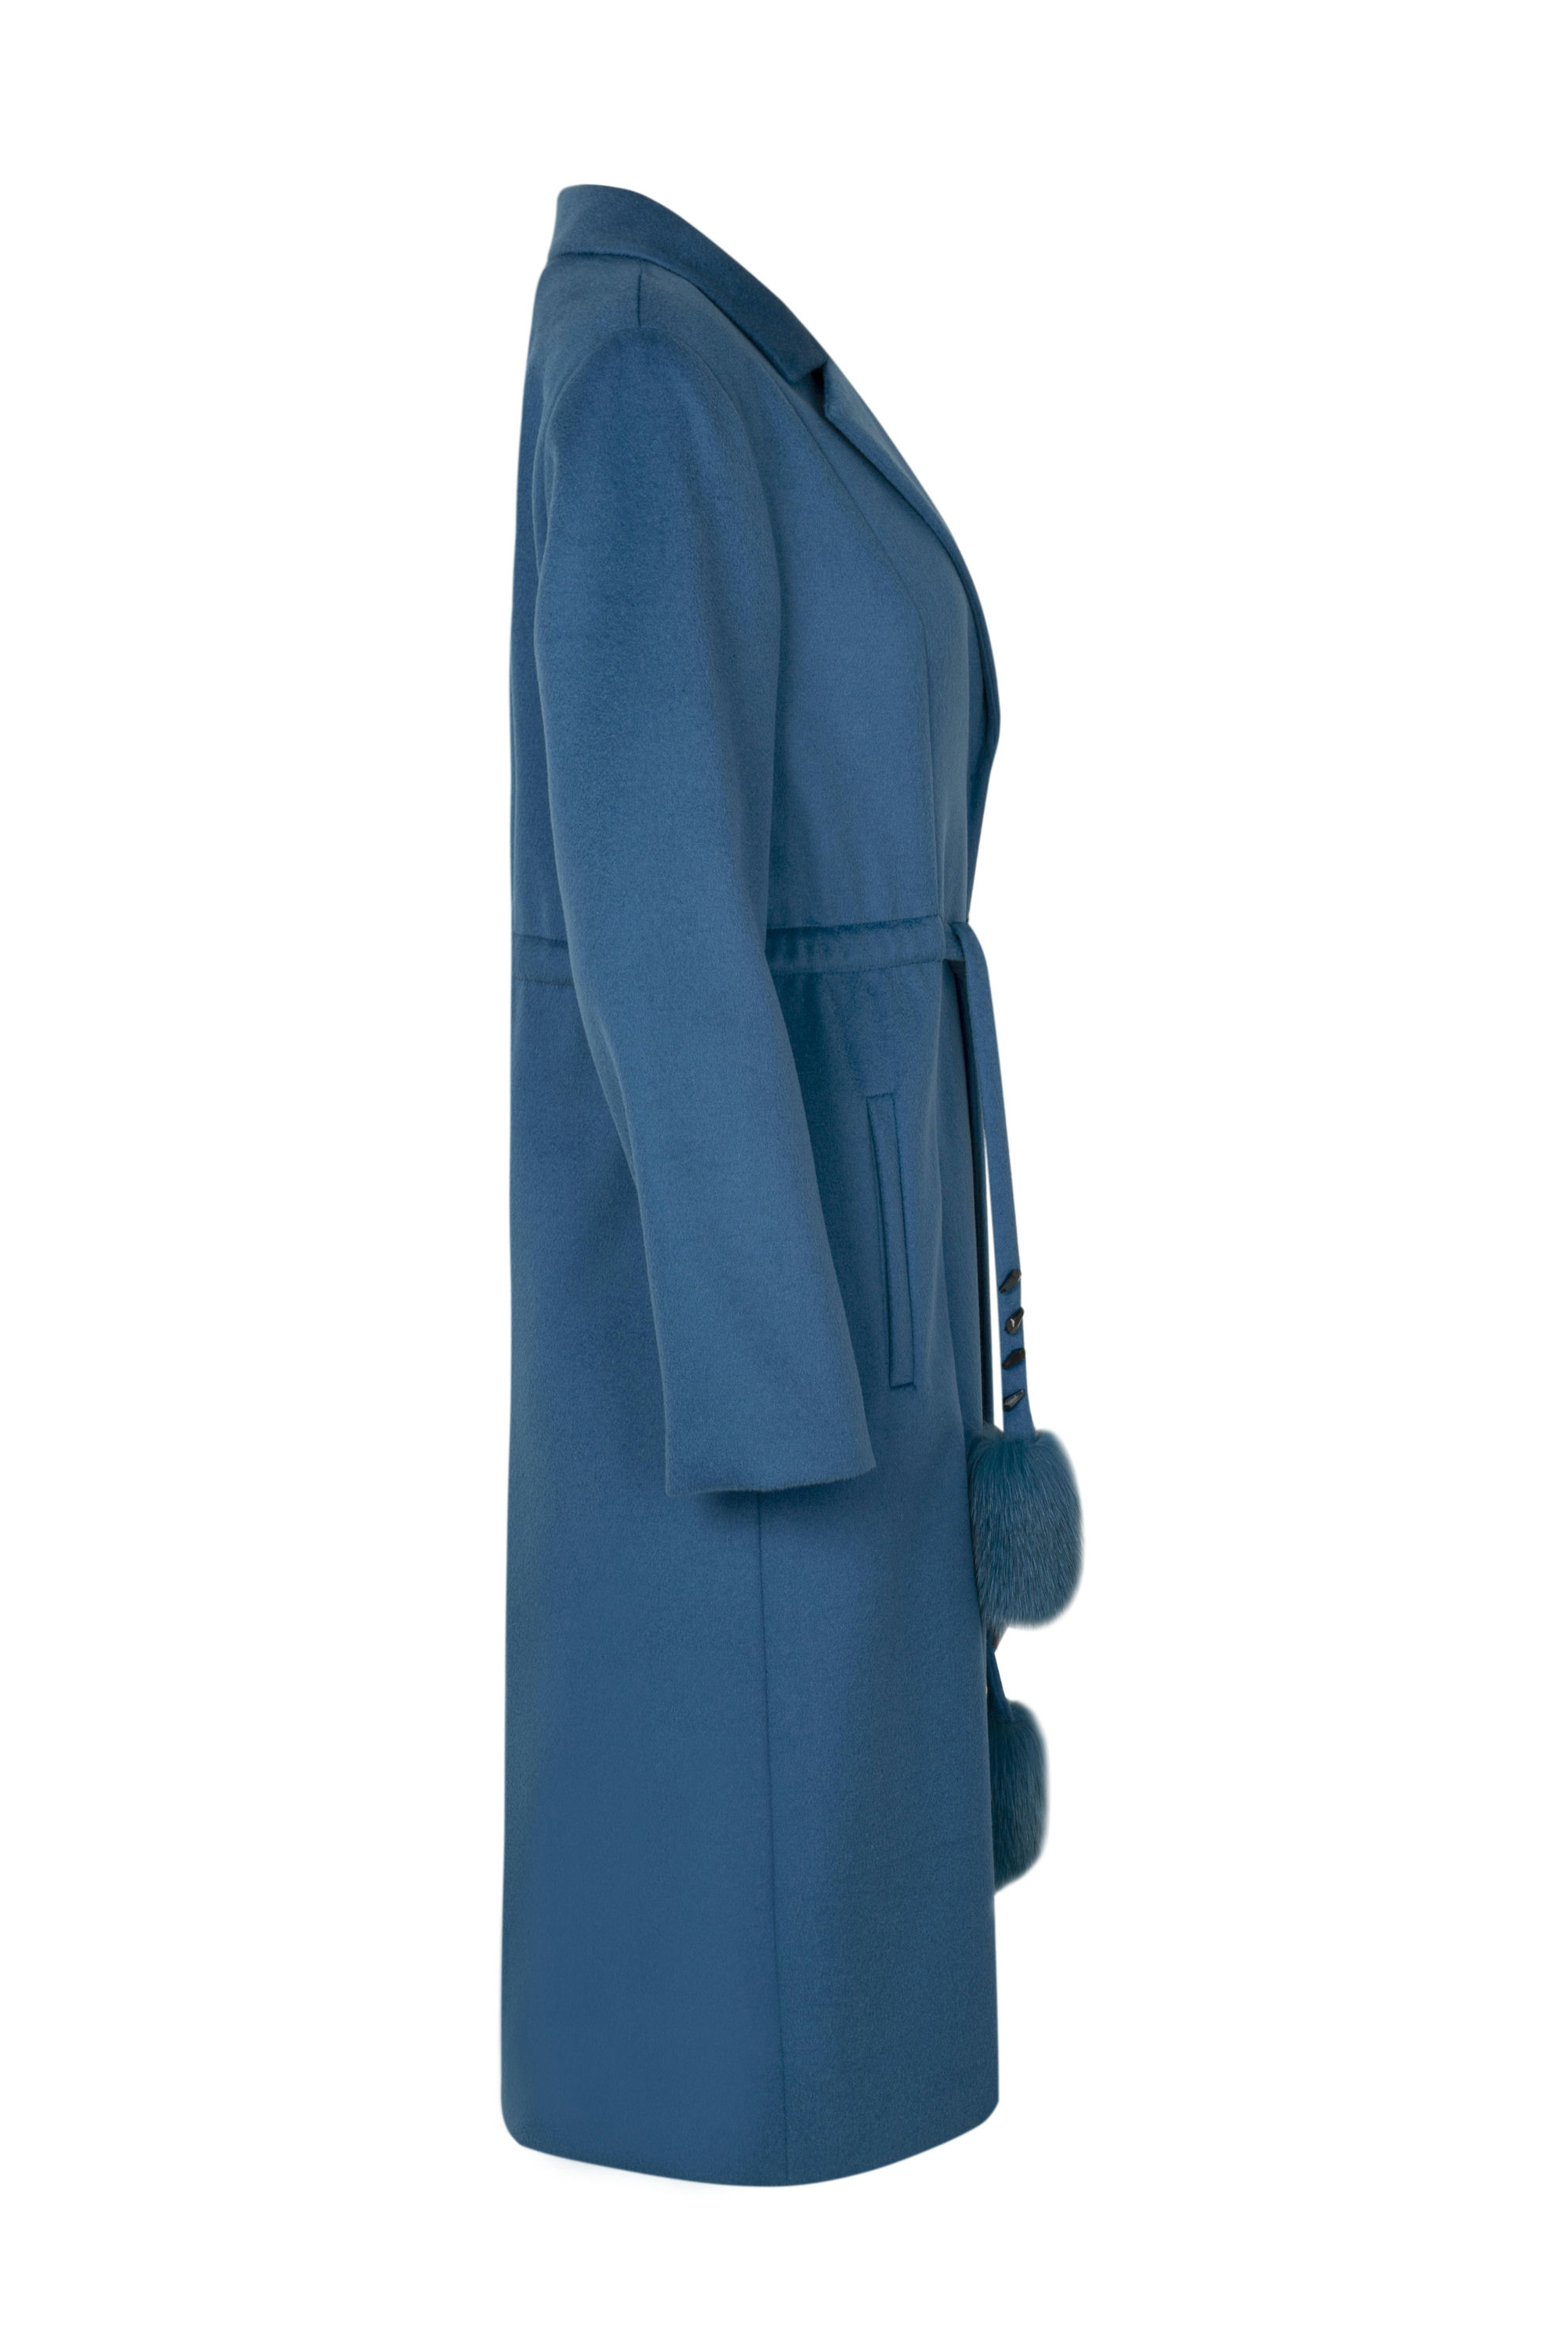 Пальто женское демисезонное 1-8096-1. Фото 2.